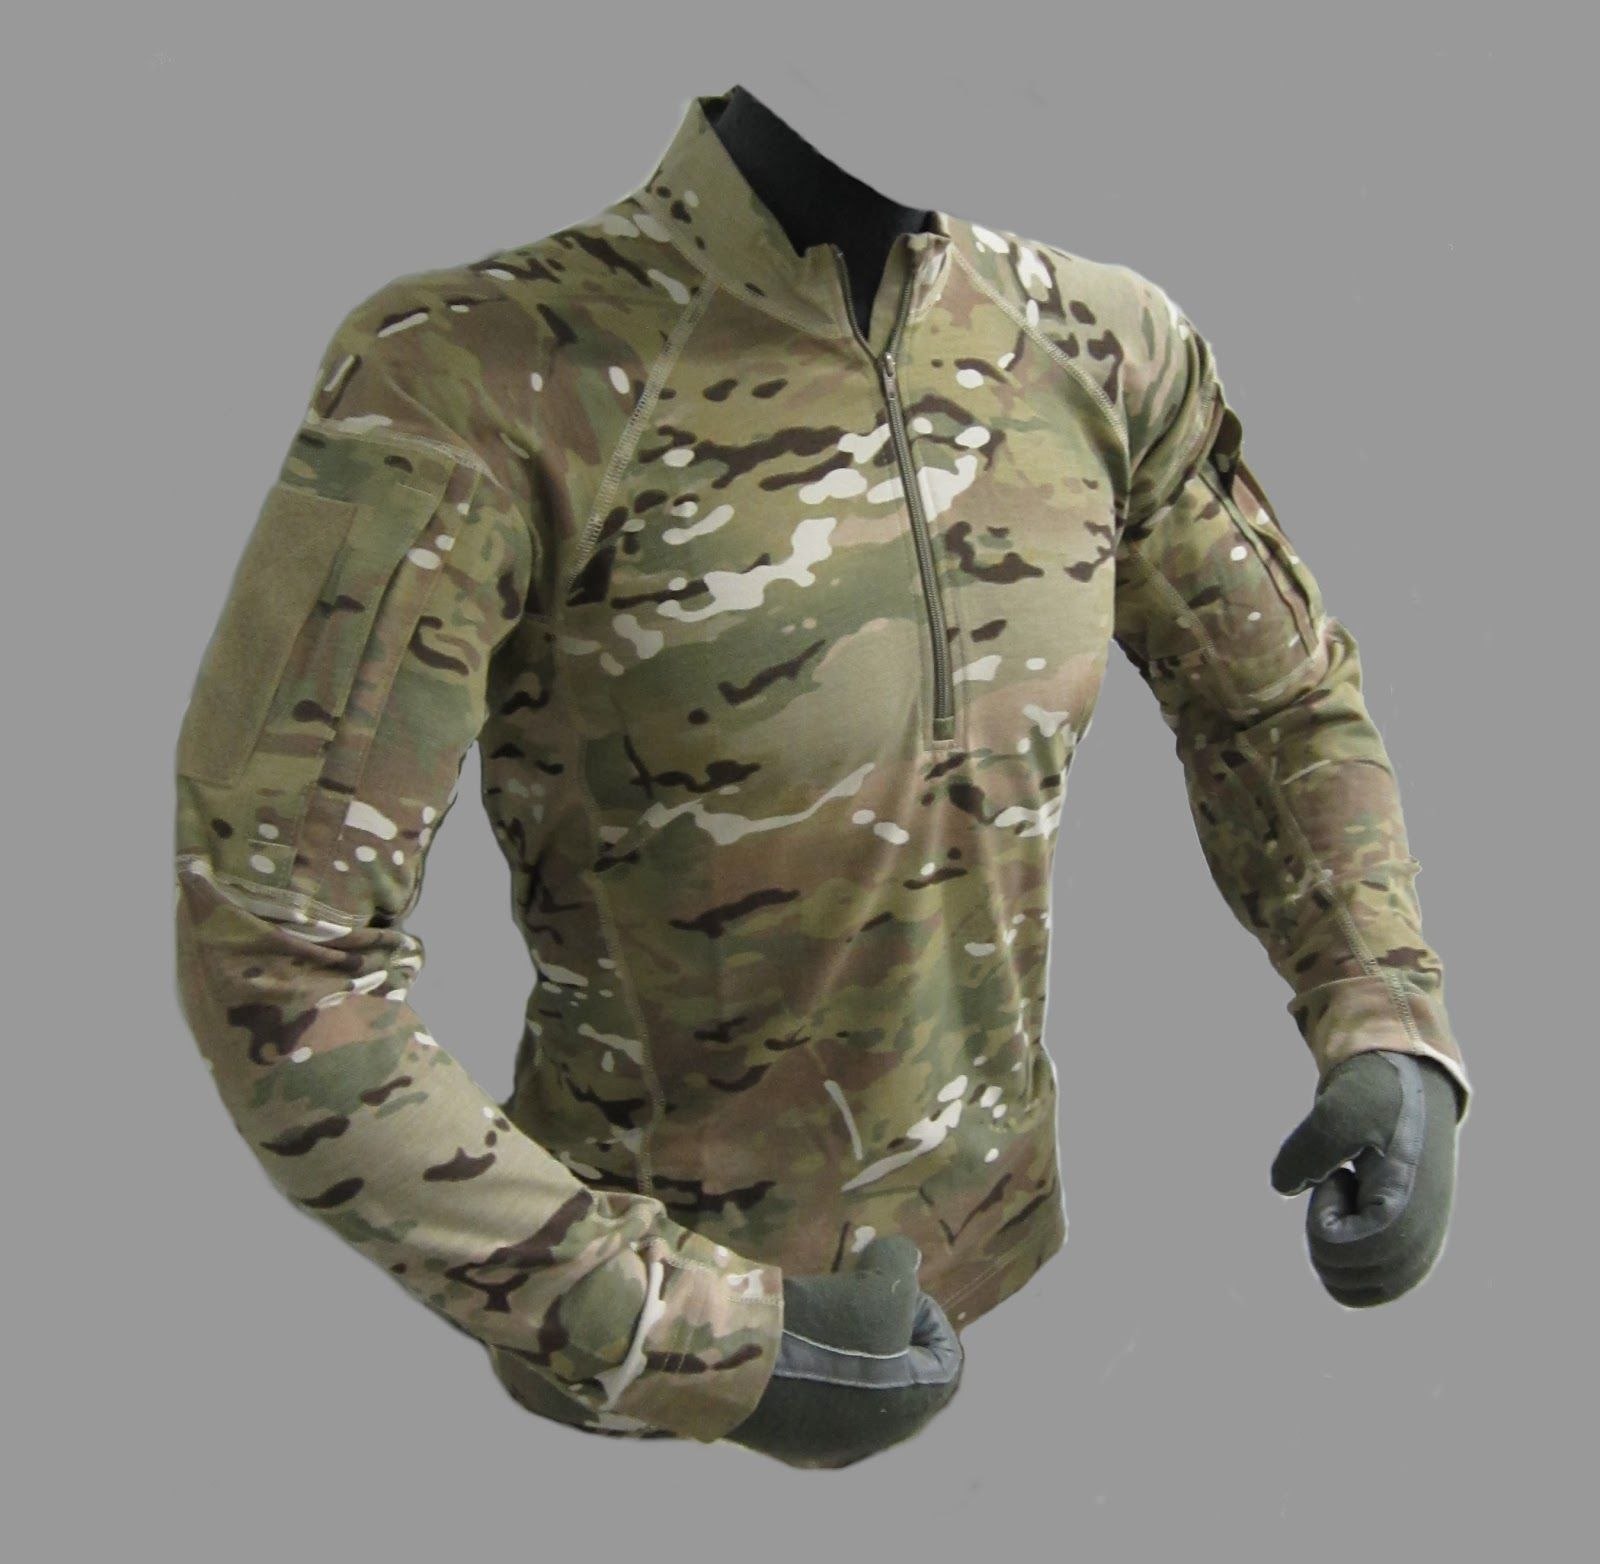 Боевая военная форма. Тактическая одежда Survival Tactical Gear. Милитари рубашка комбат ширт. Костюм g3 Multicam. Sturmer Combat Shirt g3 налокотник.